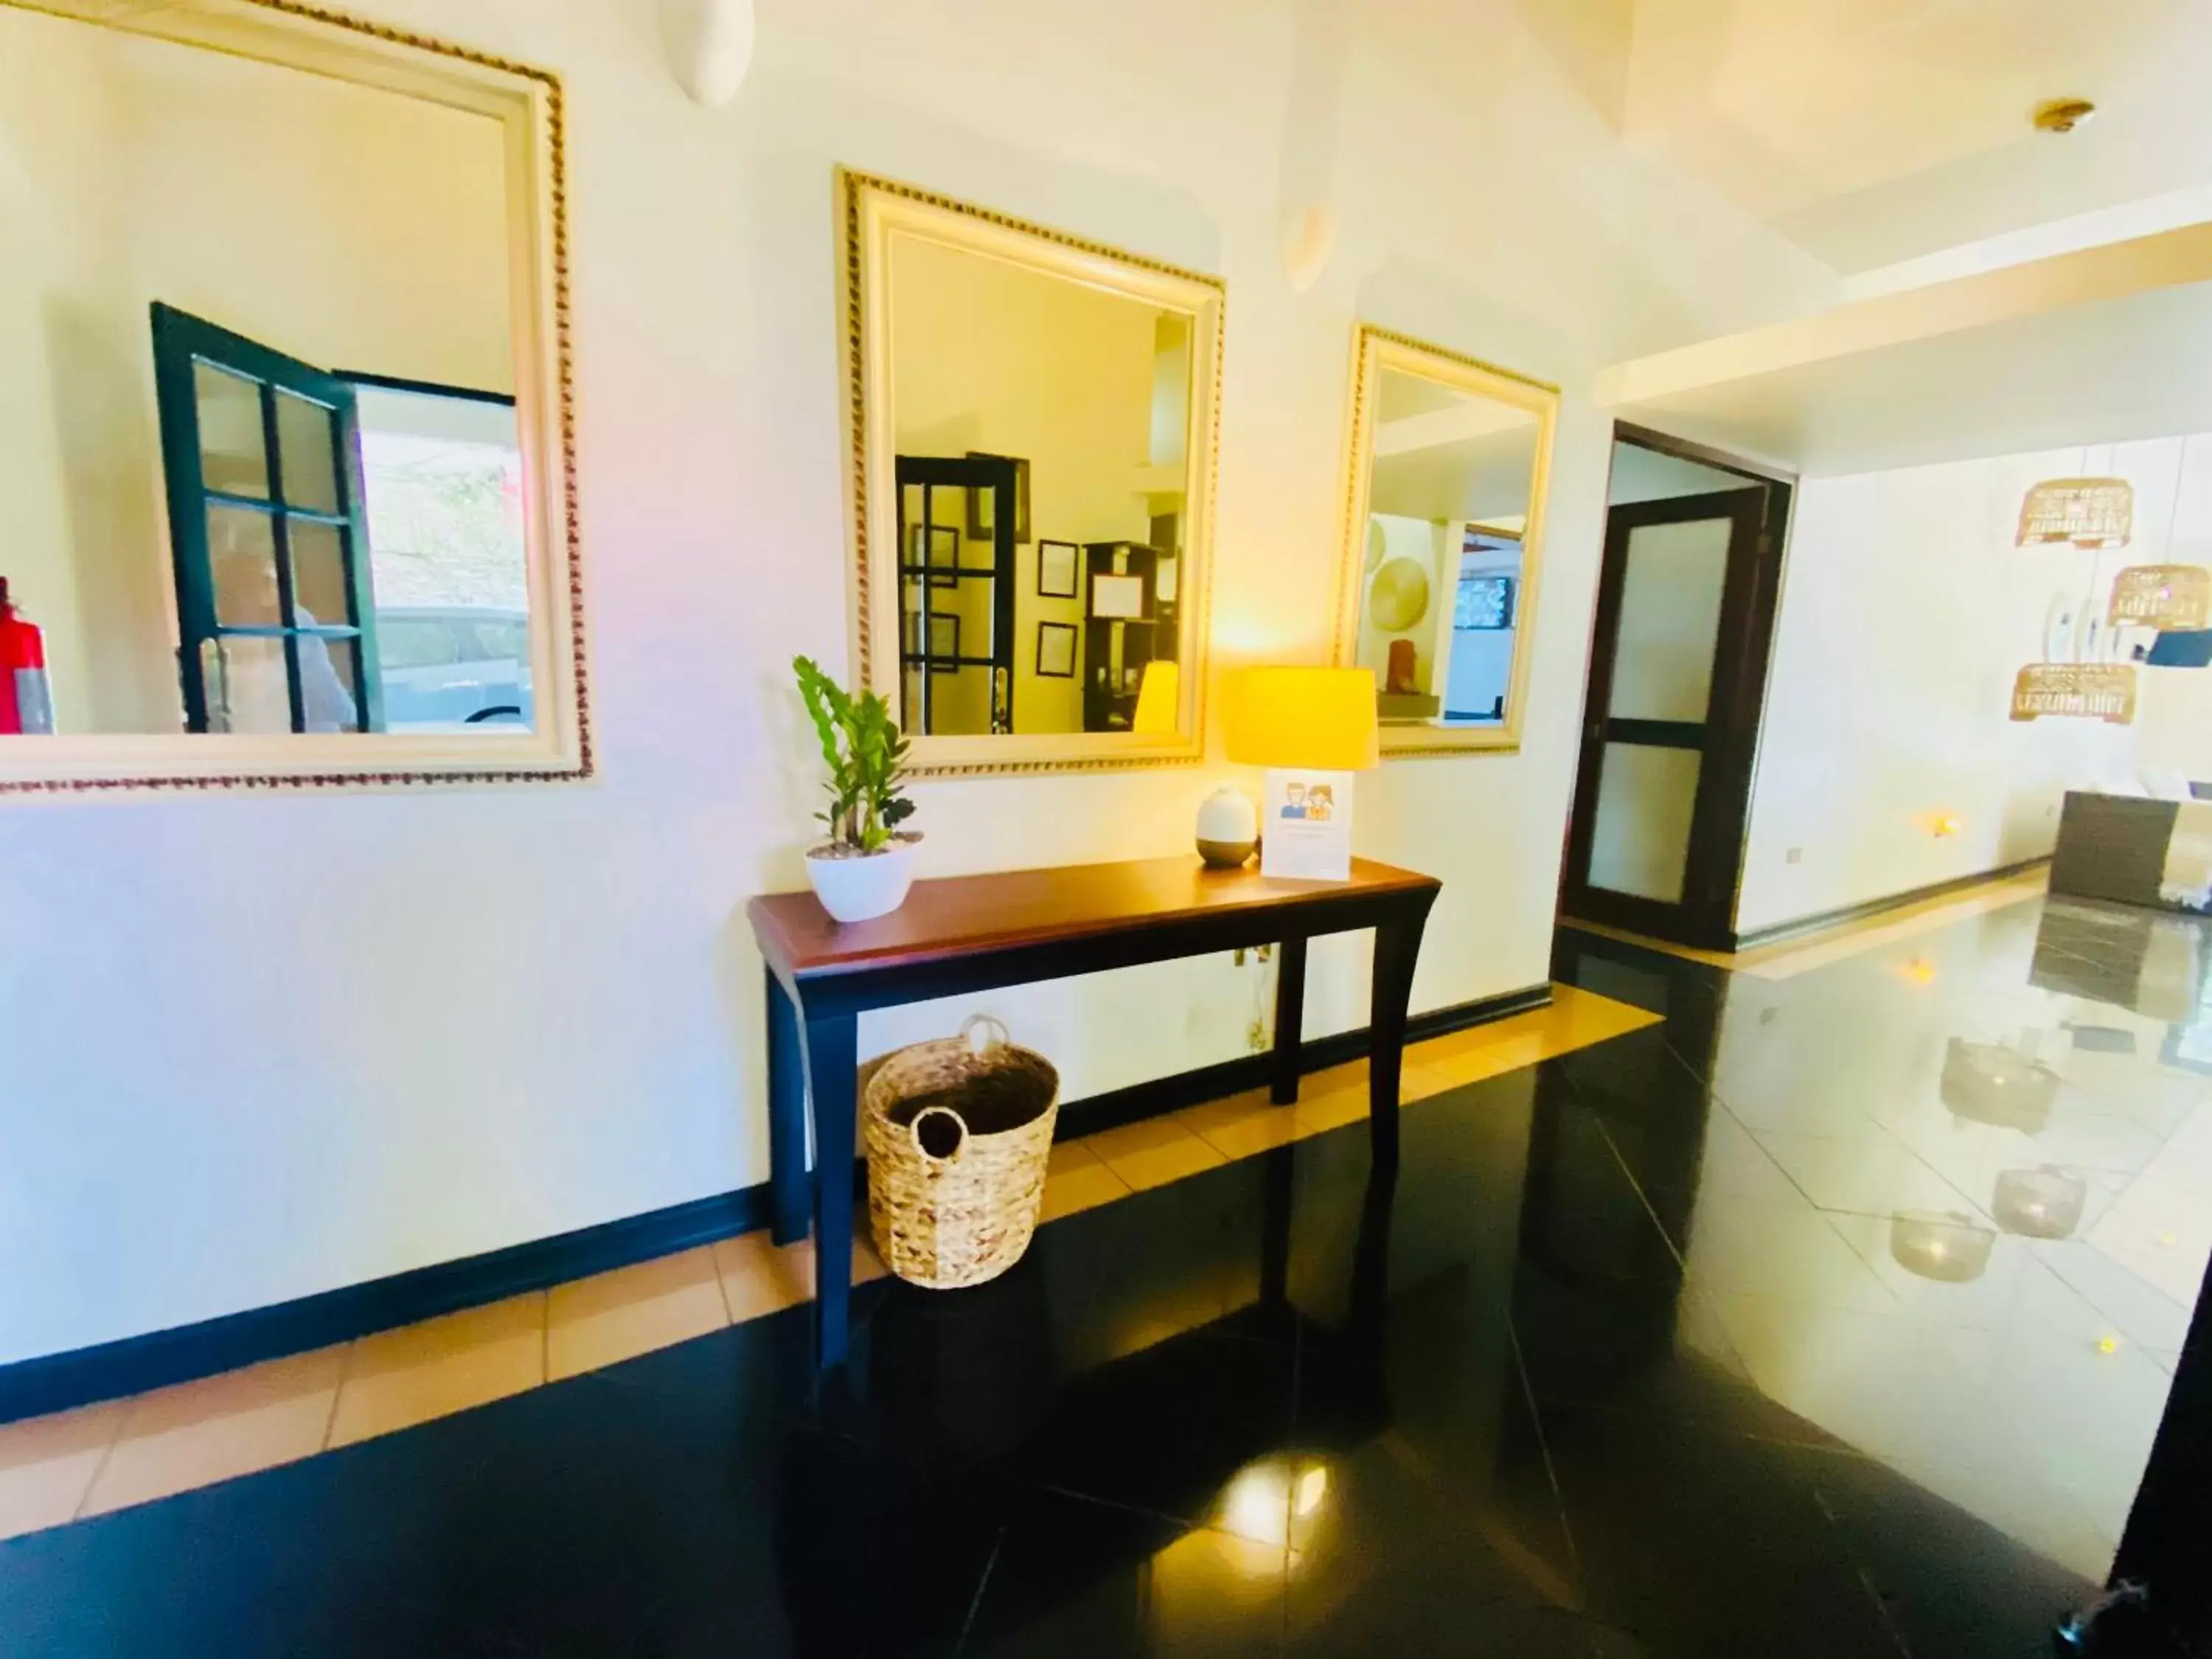 Lobby or reception, Bathroom in Hotel Mango Airport